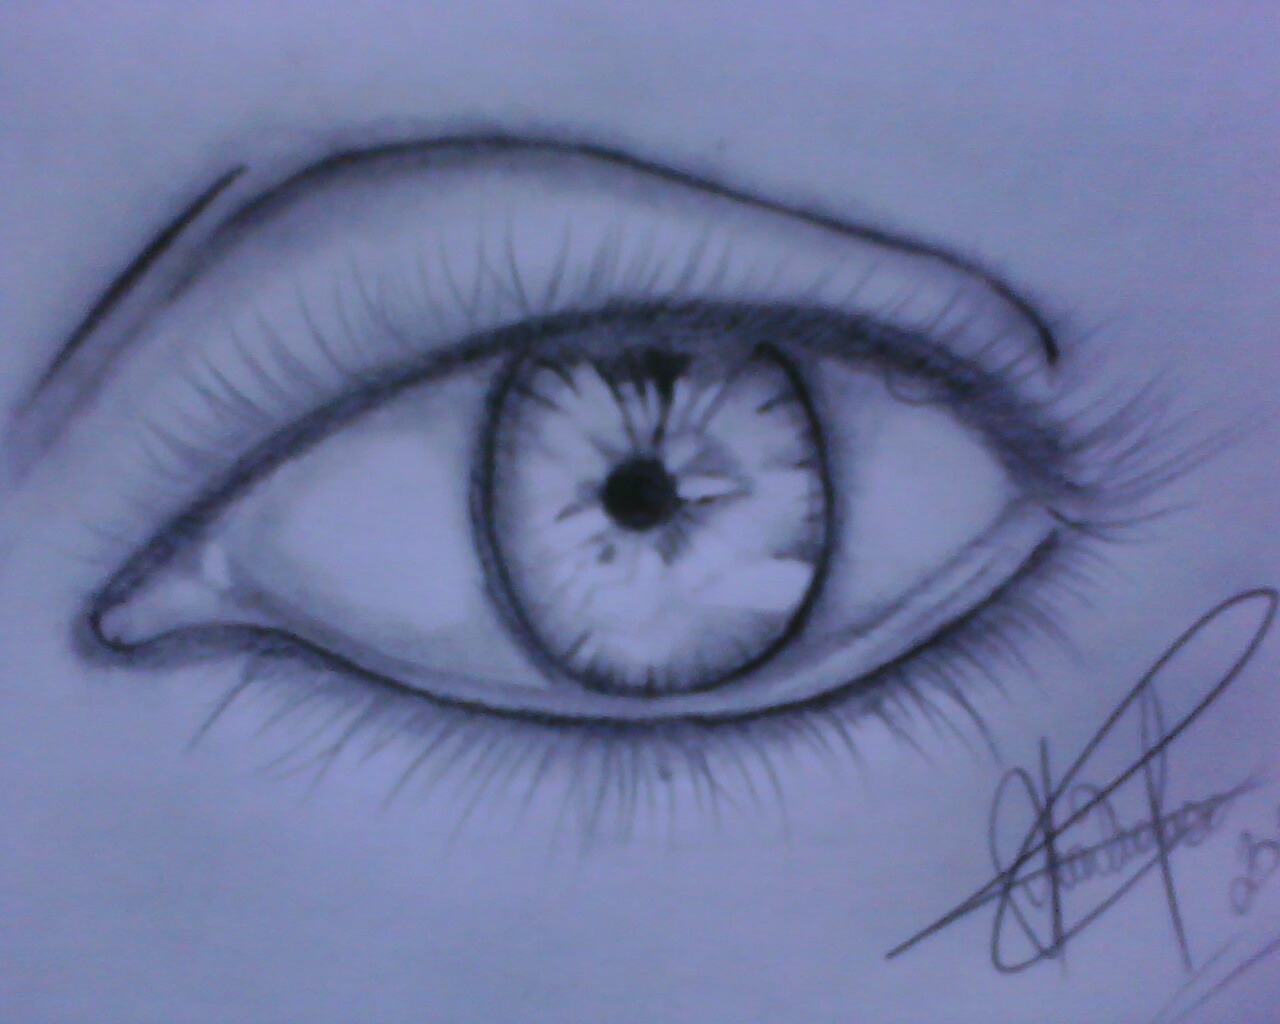 Arte Em Desenhos Realistas Esse Olho Foi Feito Com Um Lápis 6b E Hb O